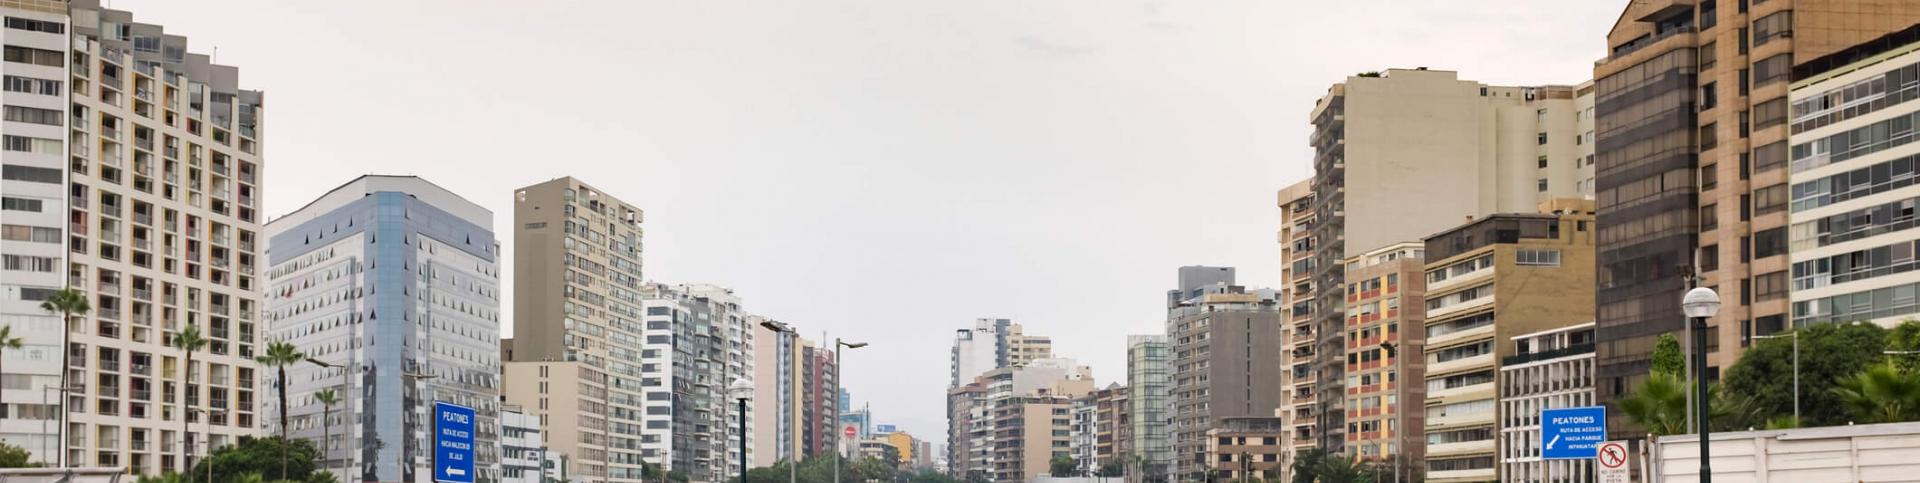 Legado Urbanistico de Lima 2019